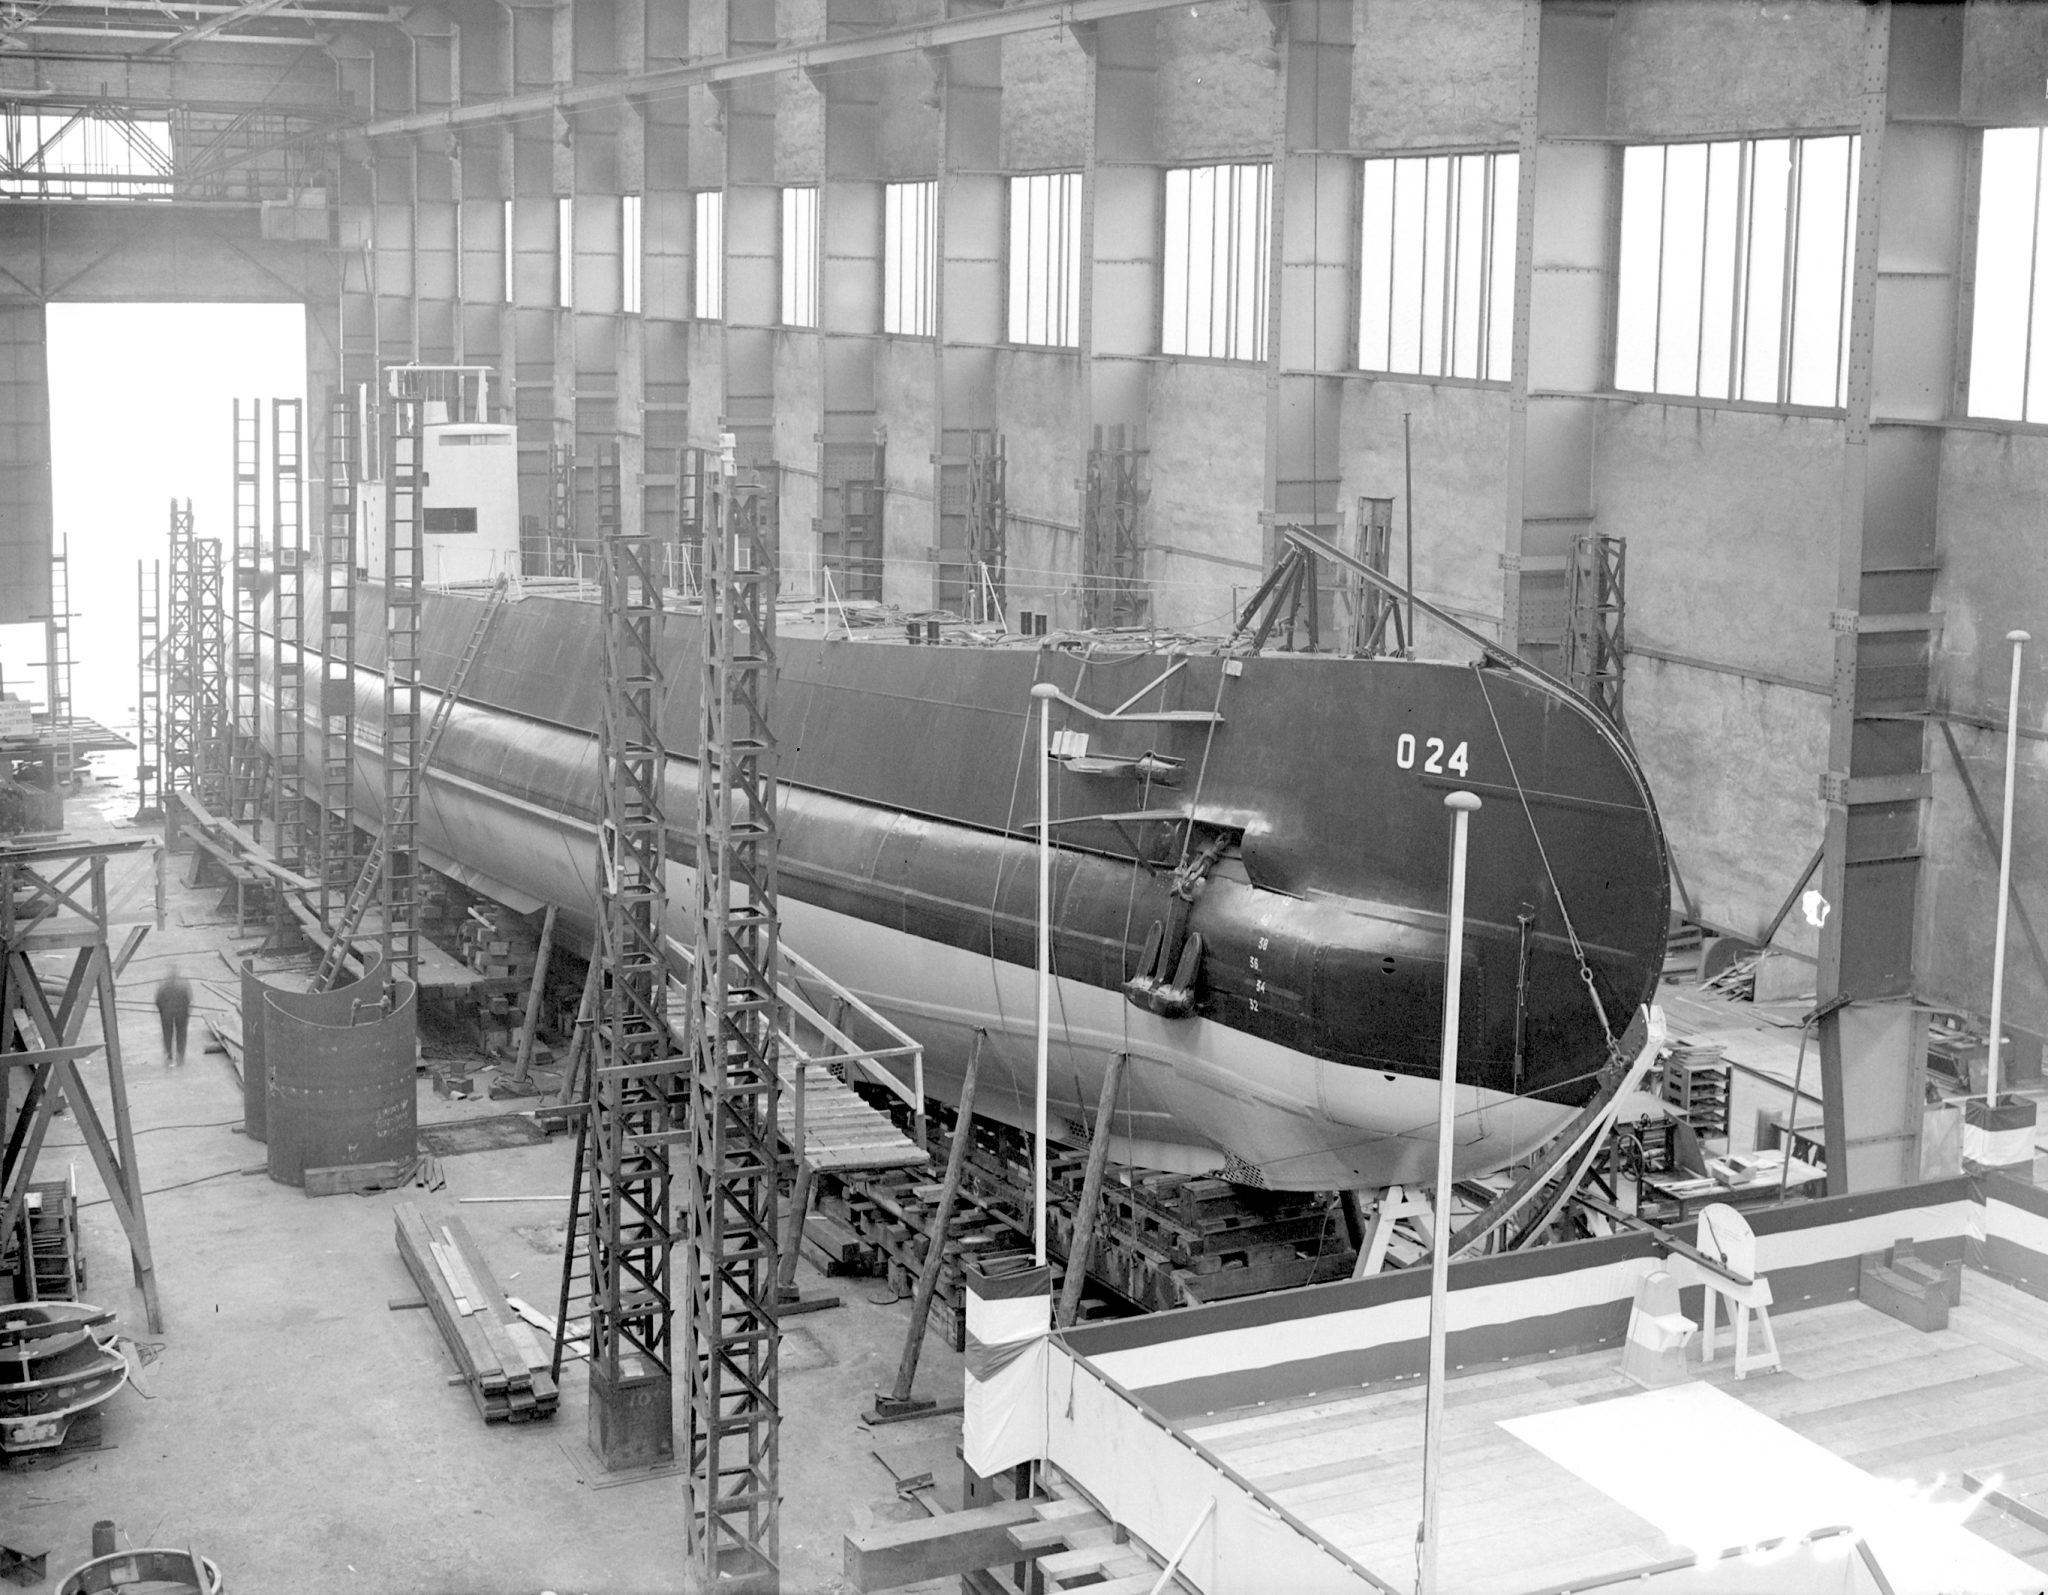 18-3-1940.-Onderzeeboot-Hr.Ms_.-O24-RDM-206-in-de-onderzeebootloods-kort-voor-de-tewaterlating-bij-RDM-2048x1595.jpg